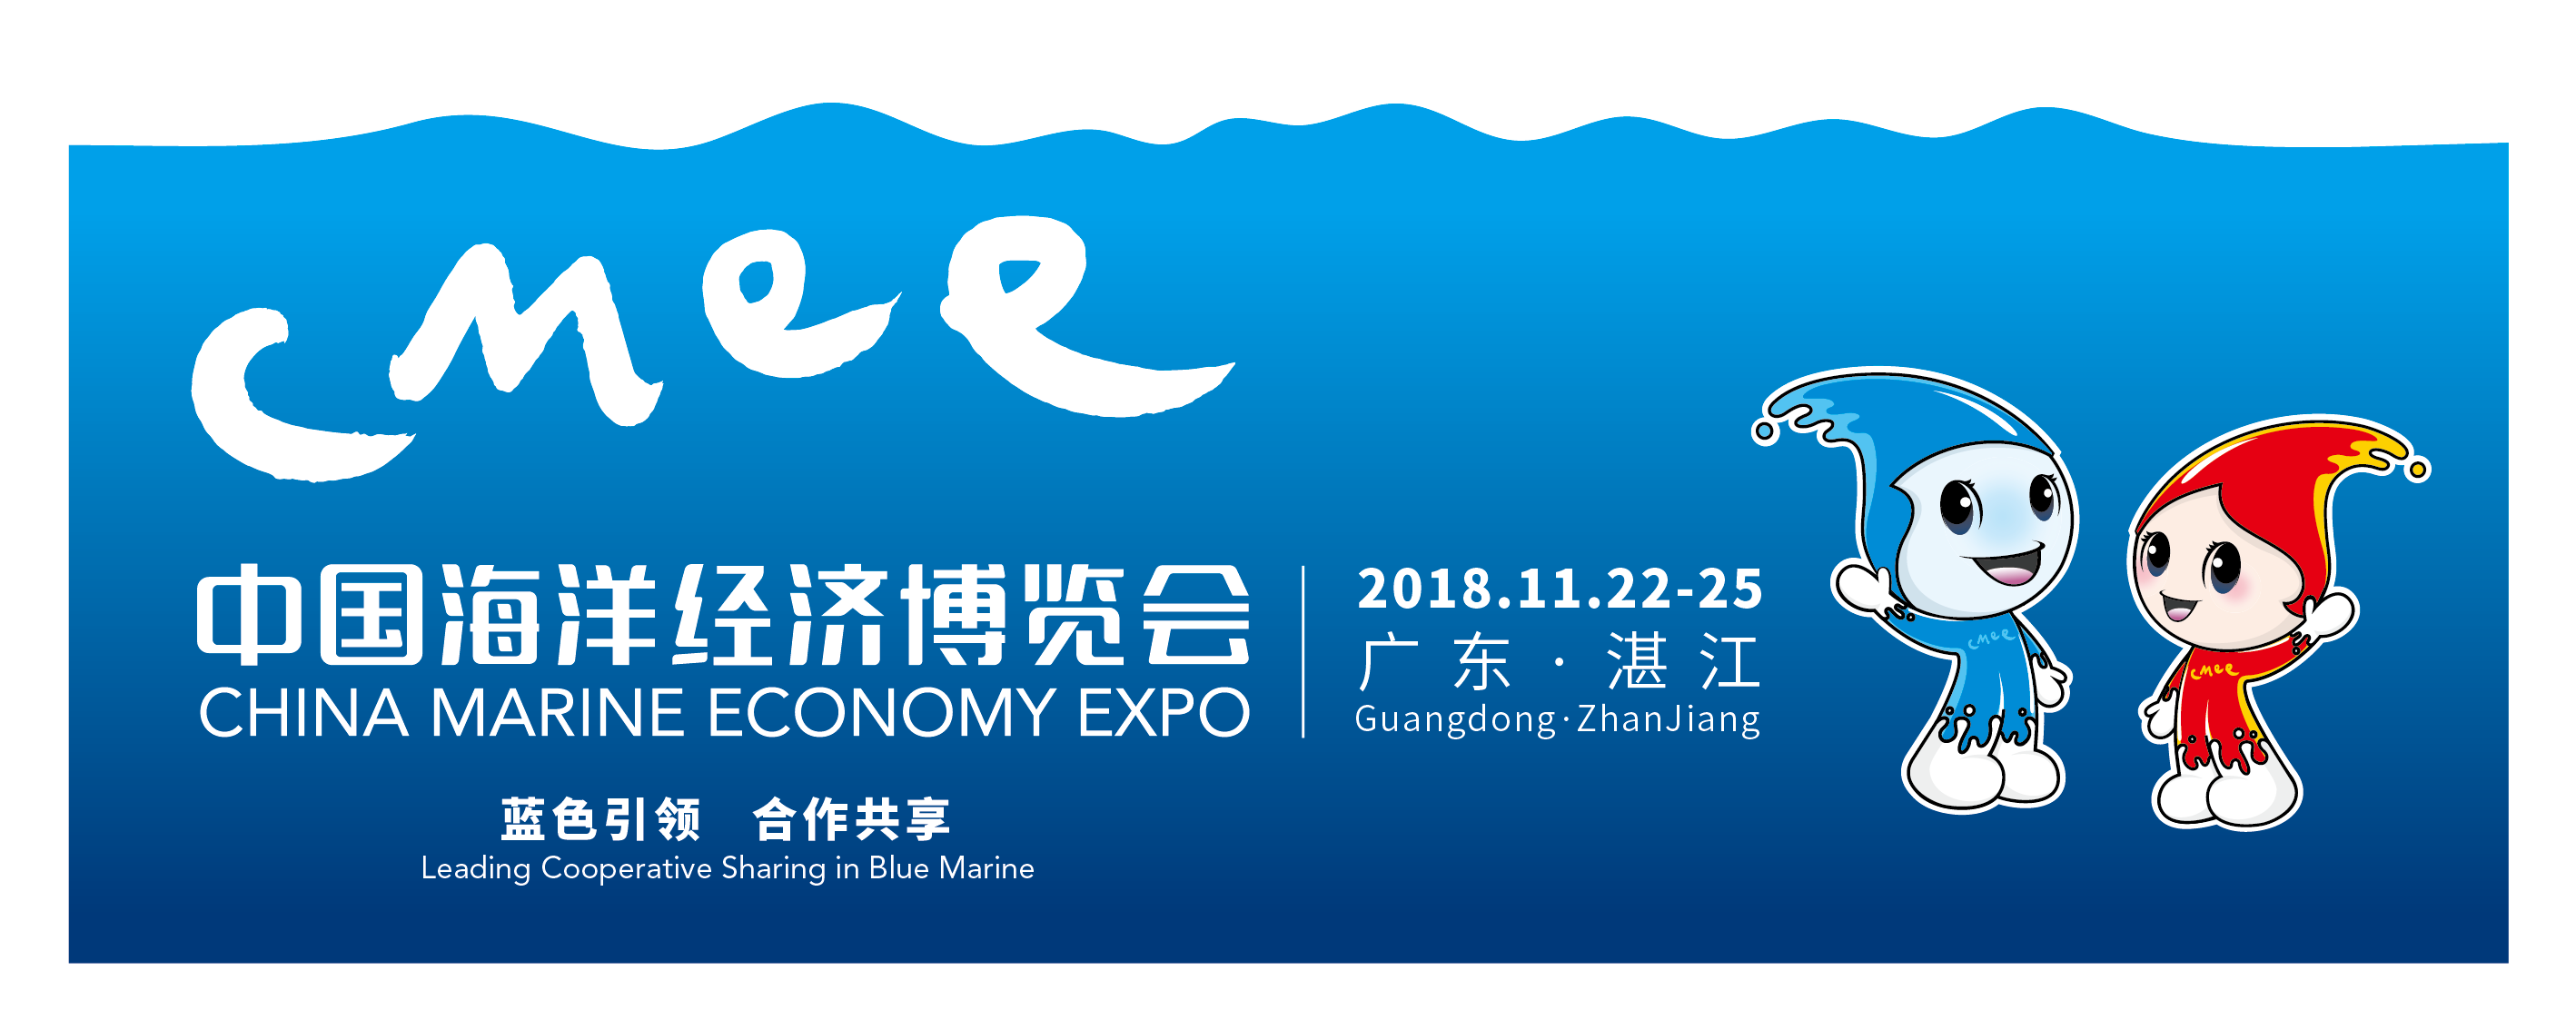 蓝色引领 合作共享  ——2018中国海洋经济博览会11月22日举办